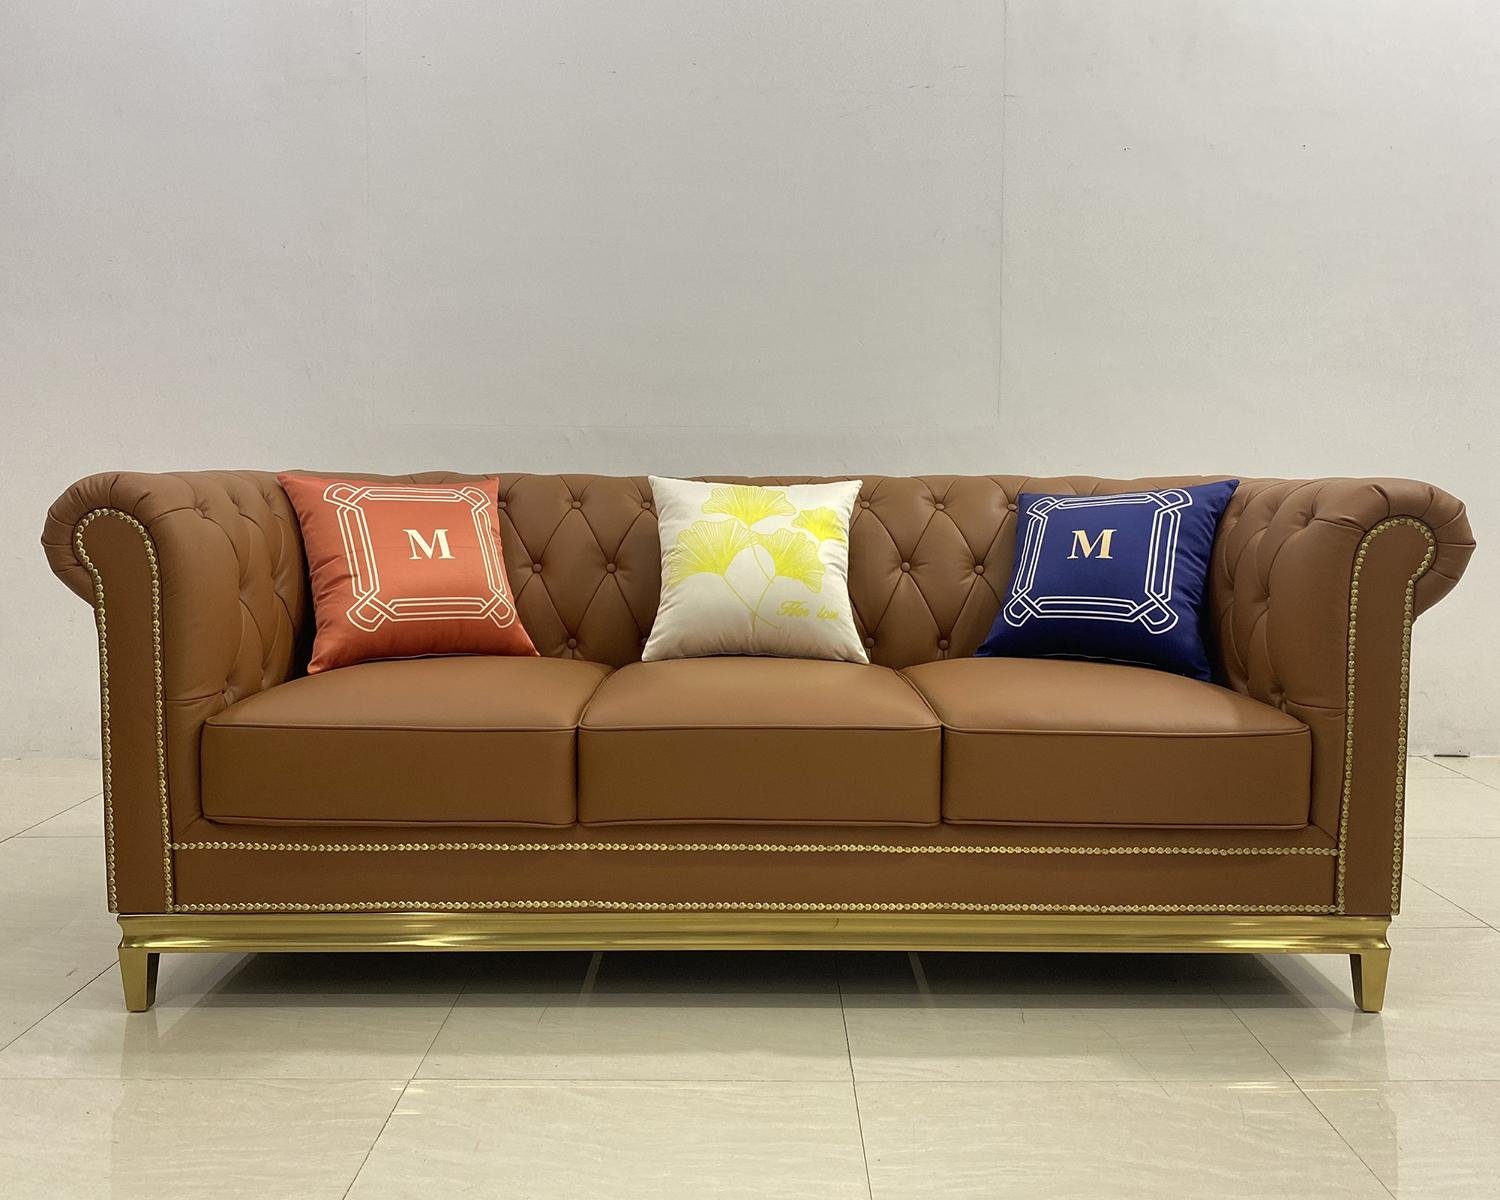 Europe in Dreisitzer Couch, JVmoebel Sofa Made Braun Möbel Couch Chesterfield Blaue Sofa